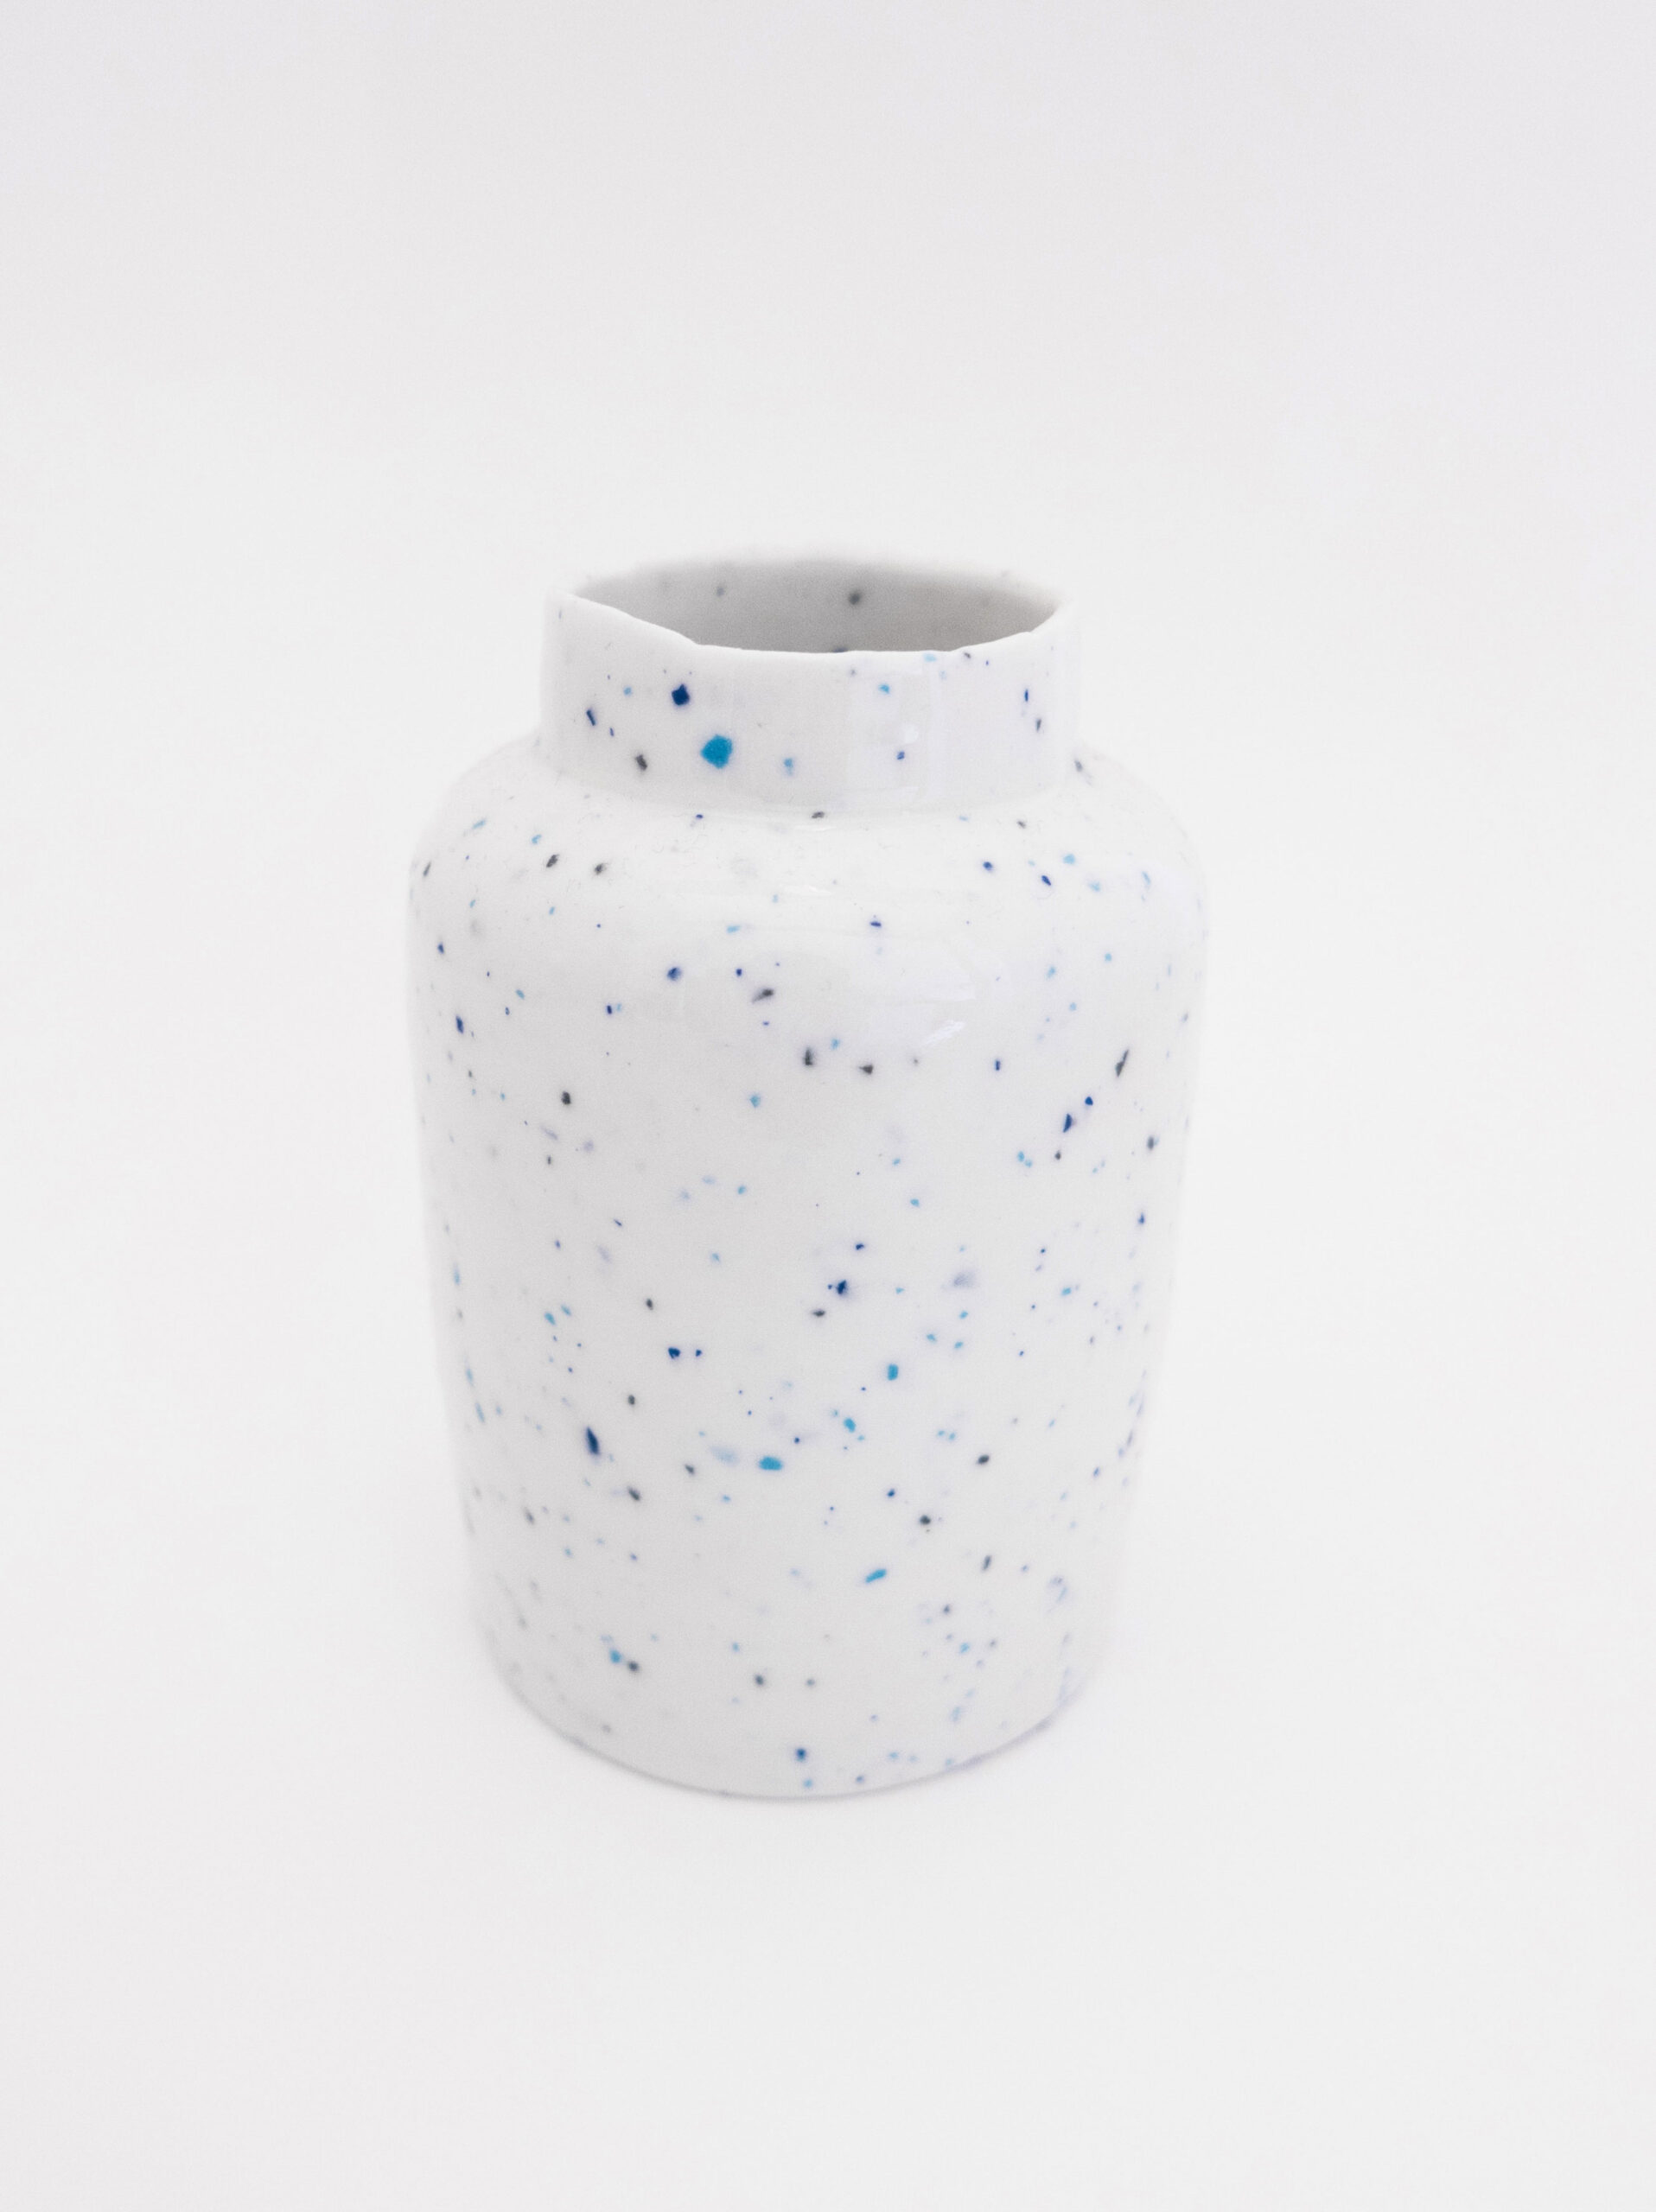 Handmade porcelain vase Yvette Hoffmann Design